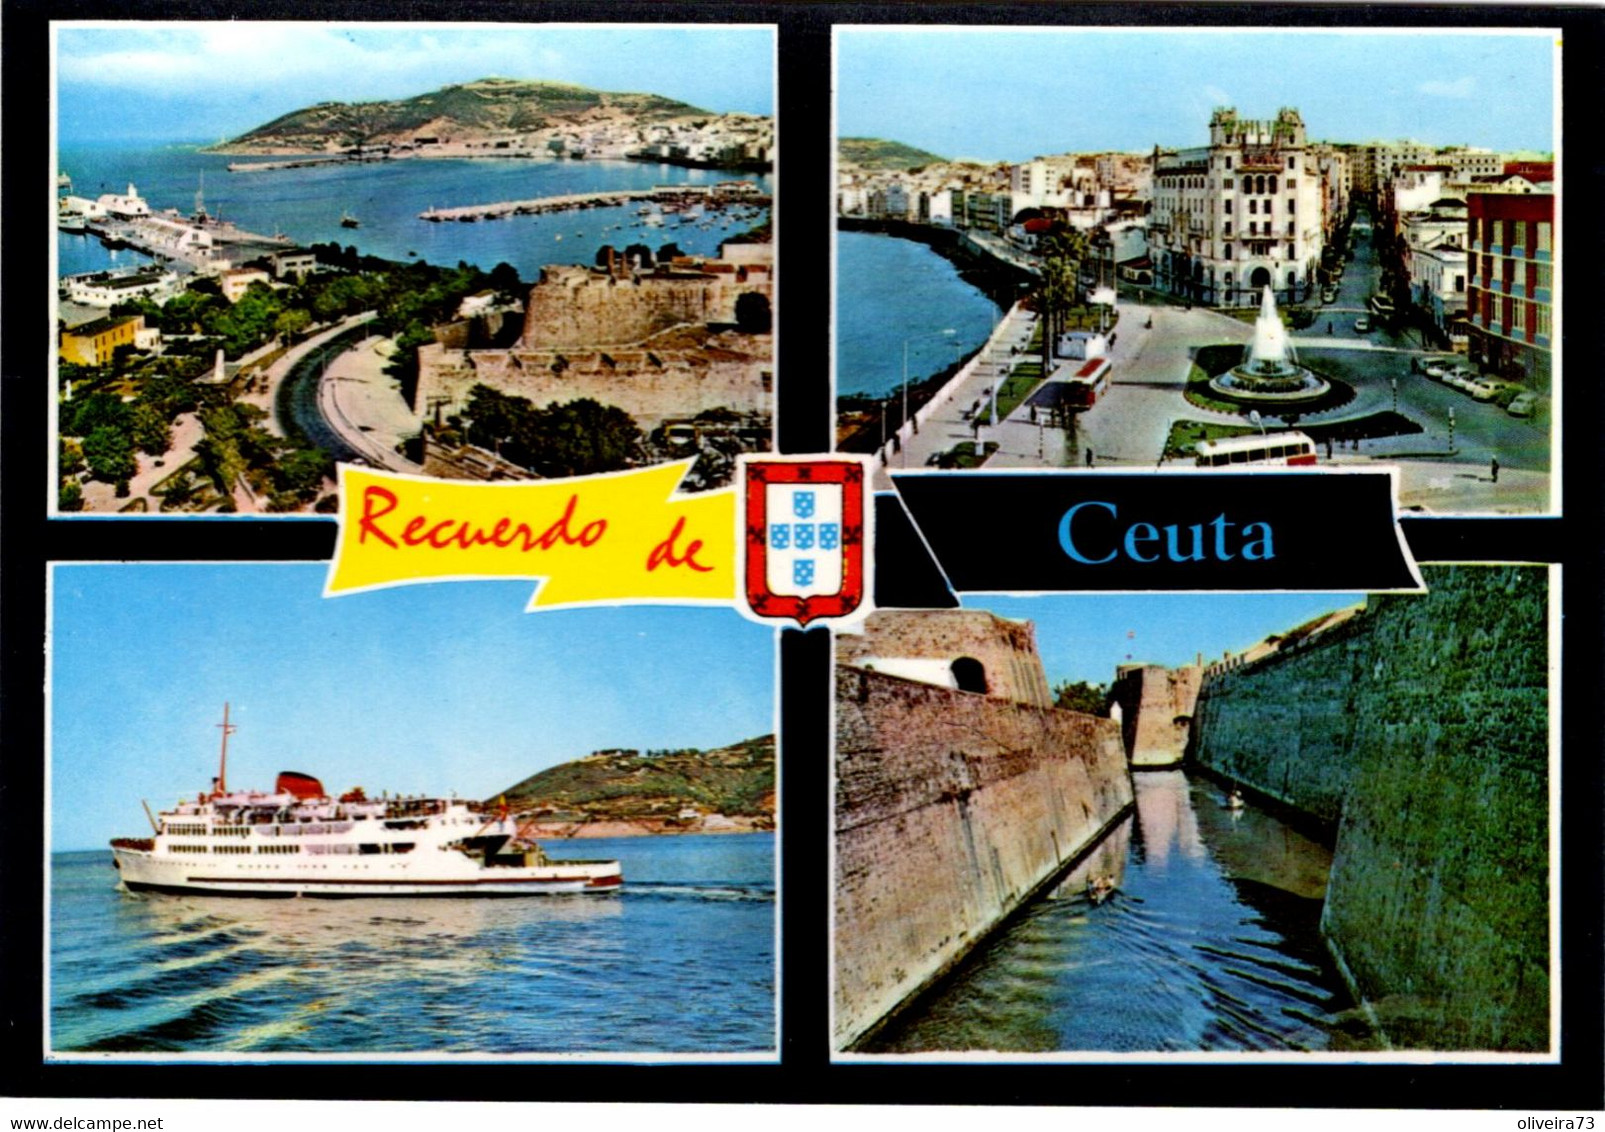 CEUTA - Recuerdo - Ceuta